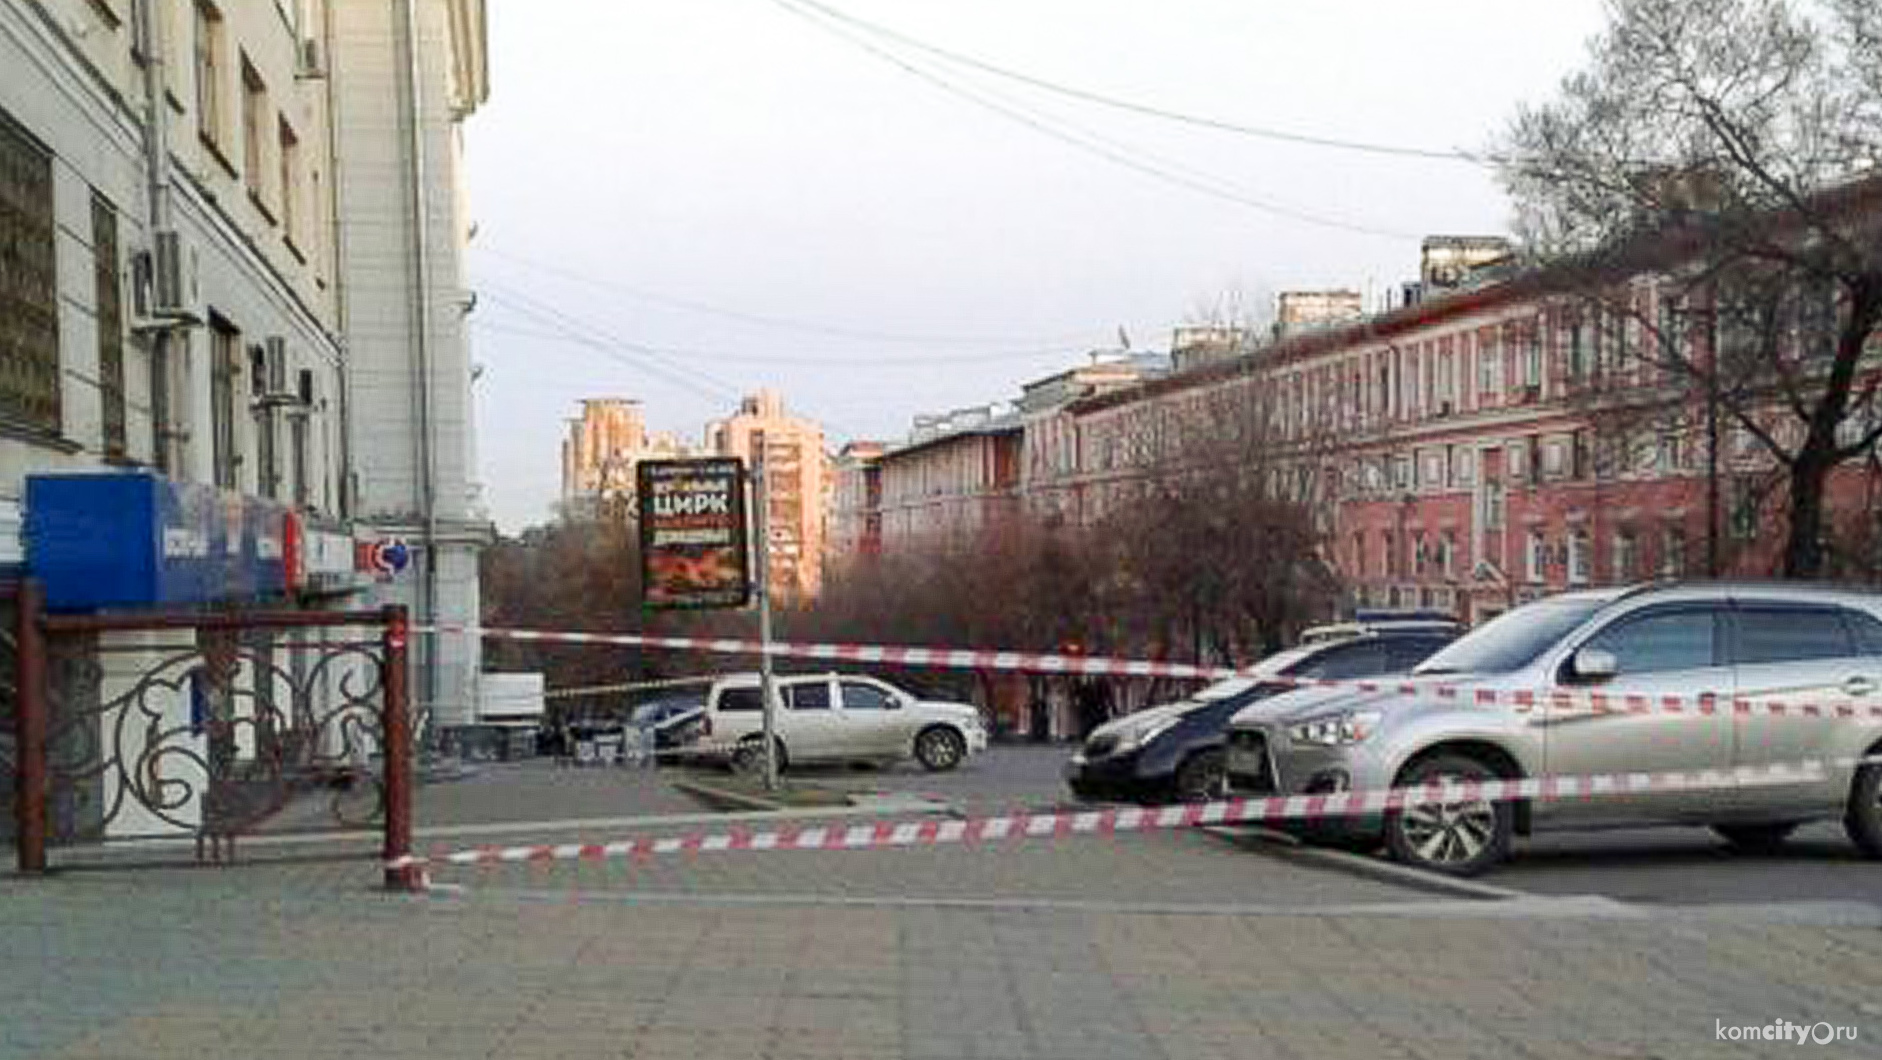 Всем известная запрещённая террористическая организация взяла на себя ответственность за нападение на ФСБ в Хабаровске